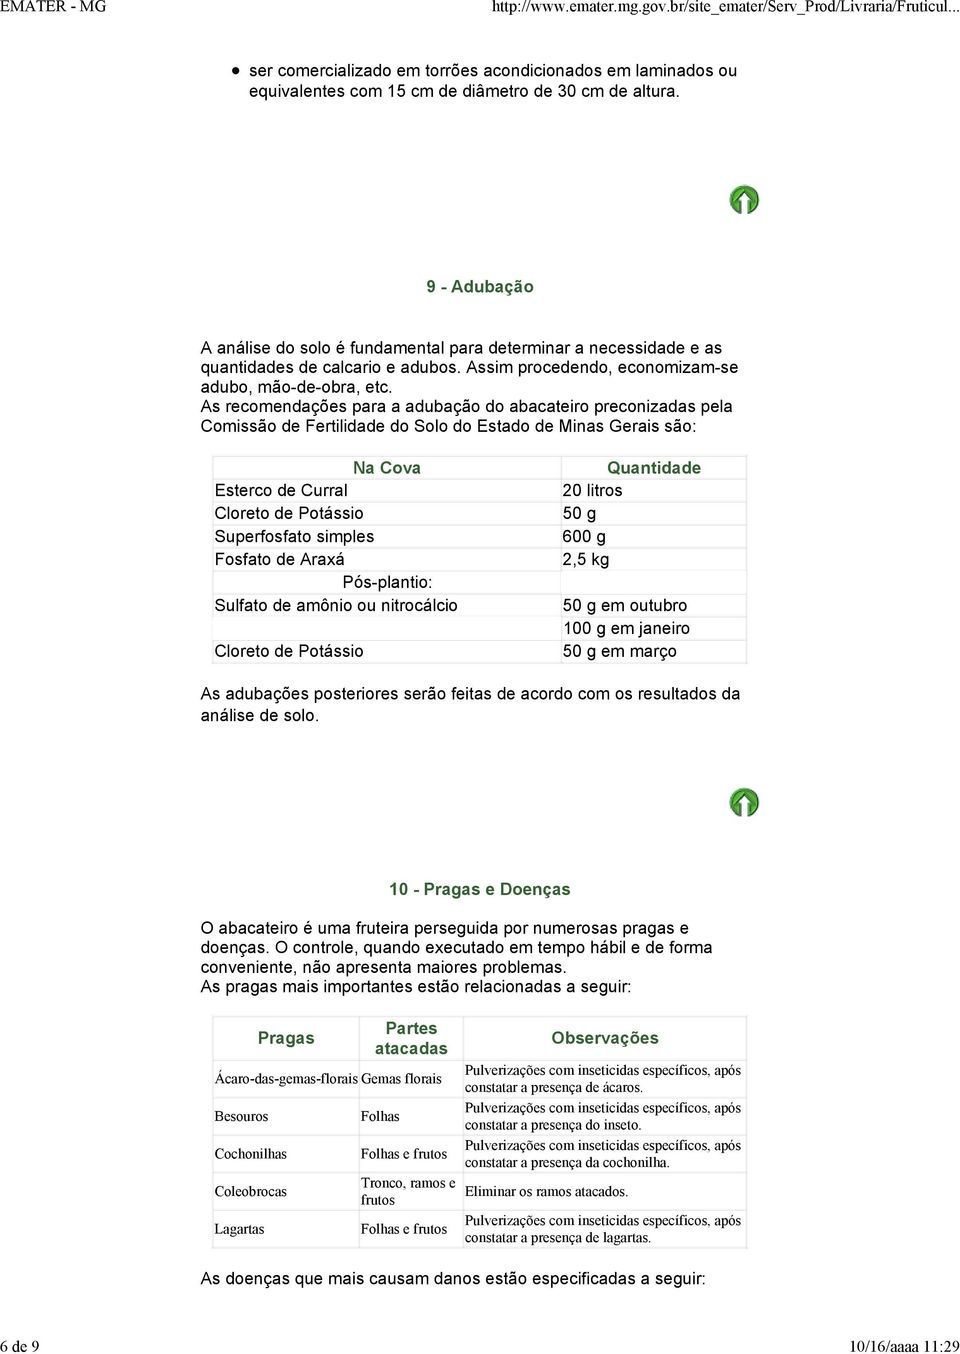 As recomendações para a adubação do abacateiro preconizadas pela Comissão de Fertilidade do Solo do Estado de Minas Gerais são: Na Cova Esterco de Curral Cloreto de Potássio Superfosfato simples